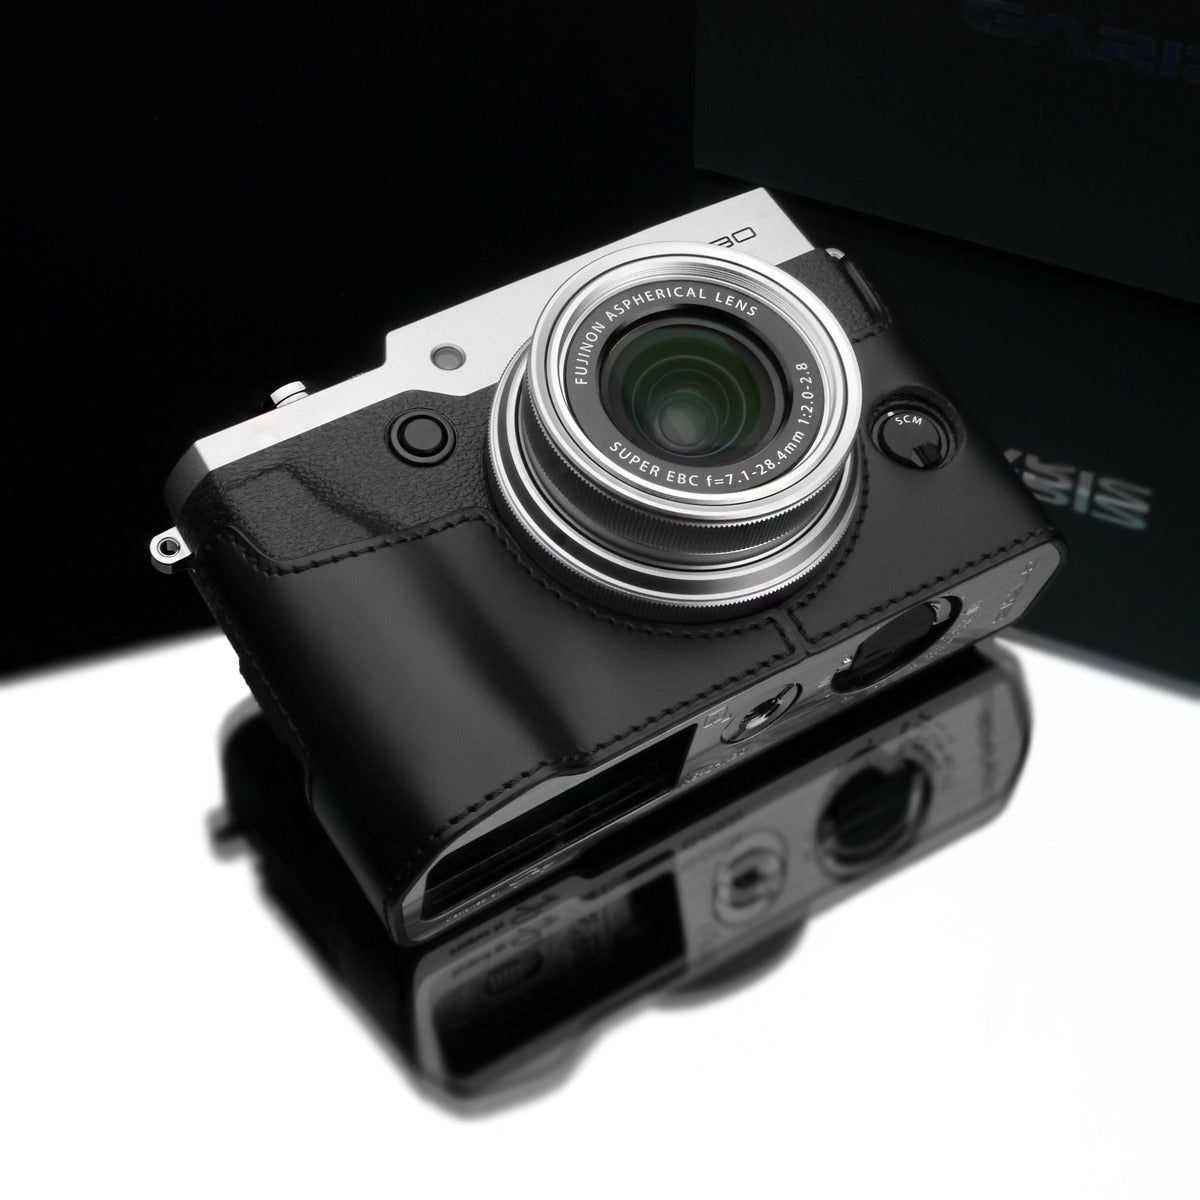 Gariz Black Leather Camera Half Case XS-CHX30BK for Fujifilm X30 Fuji X30